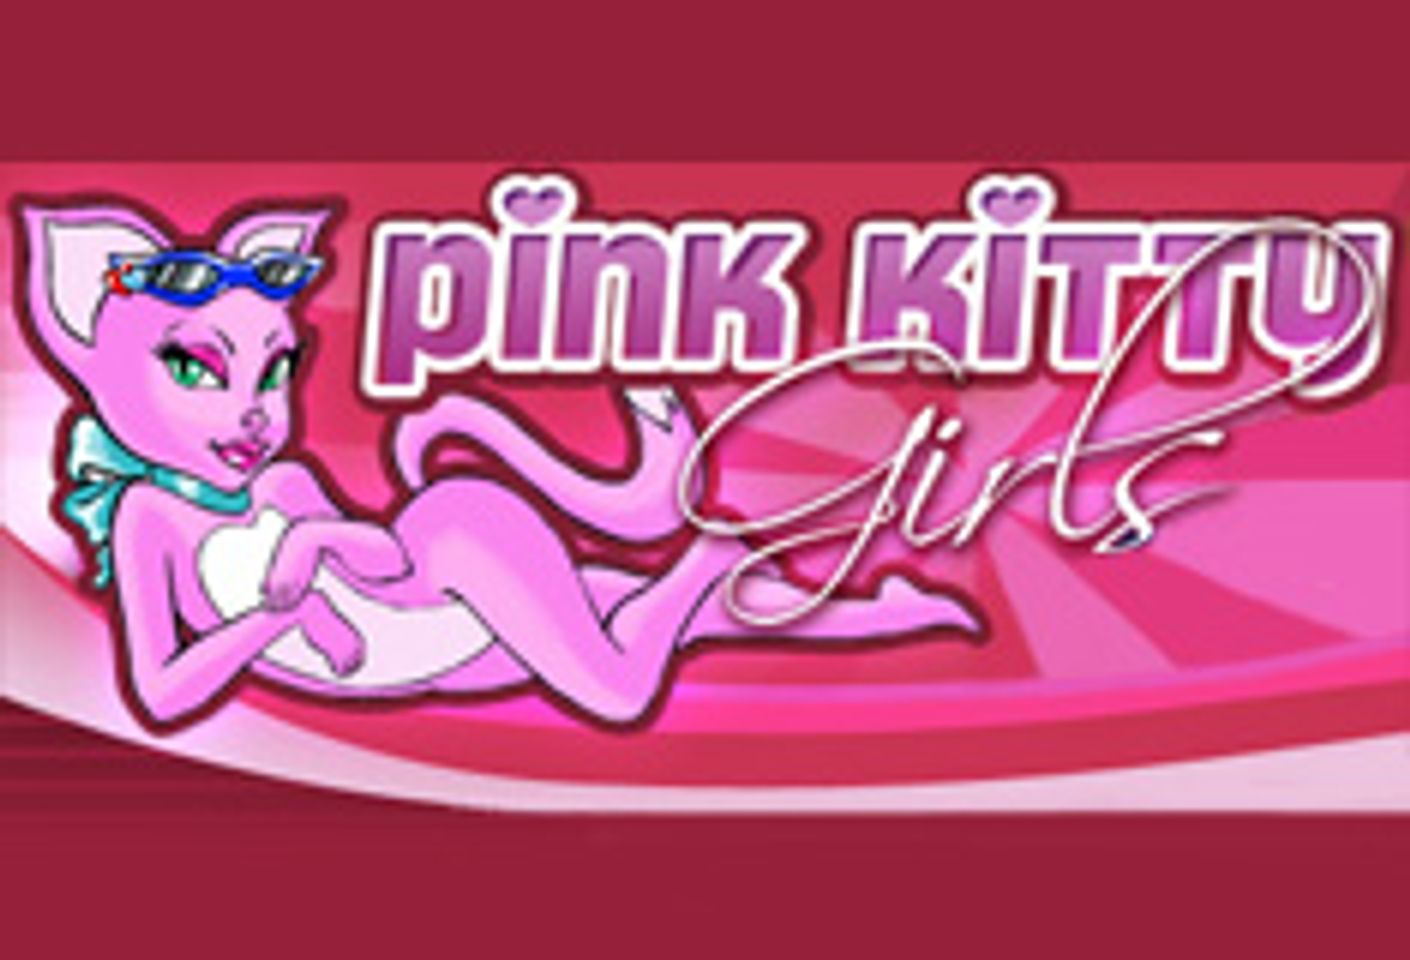 SmashBucks and AMA Content Partner for PinkKittyGirls